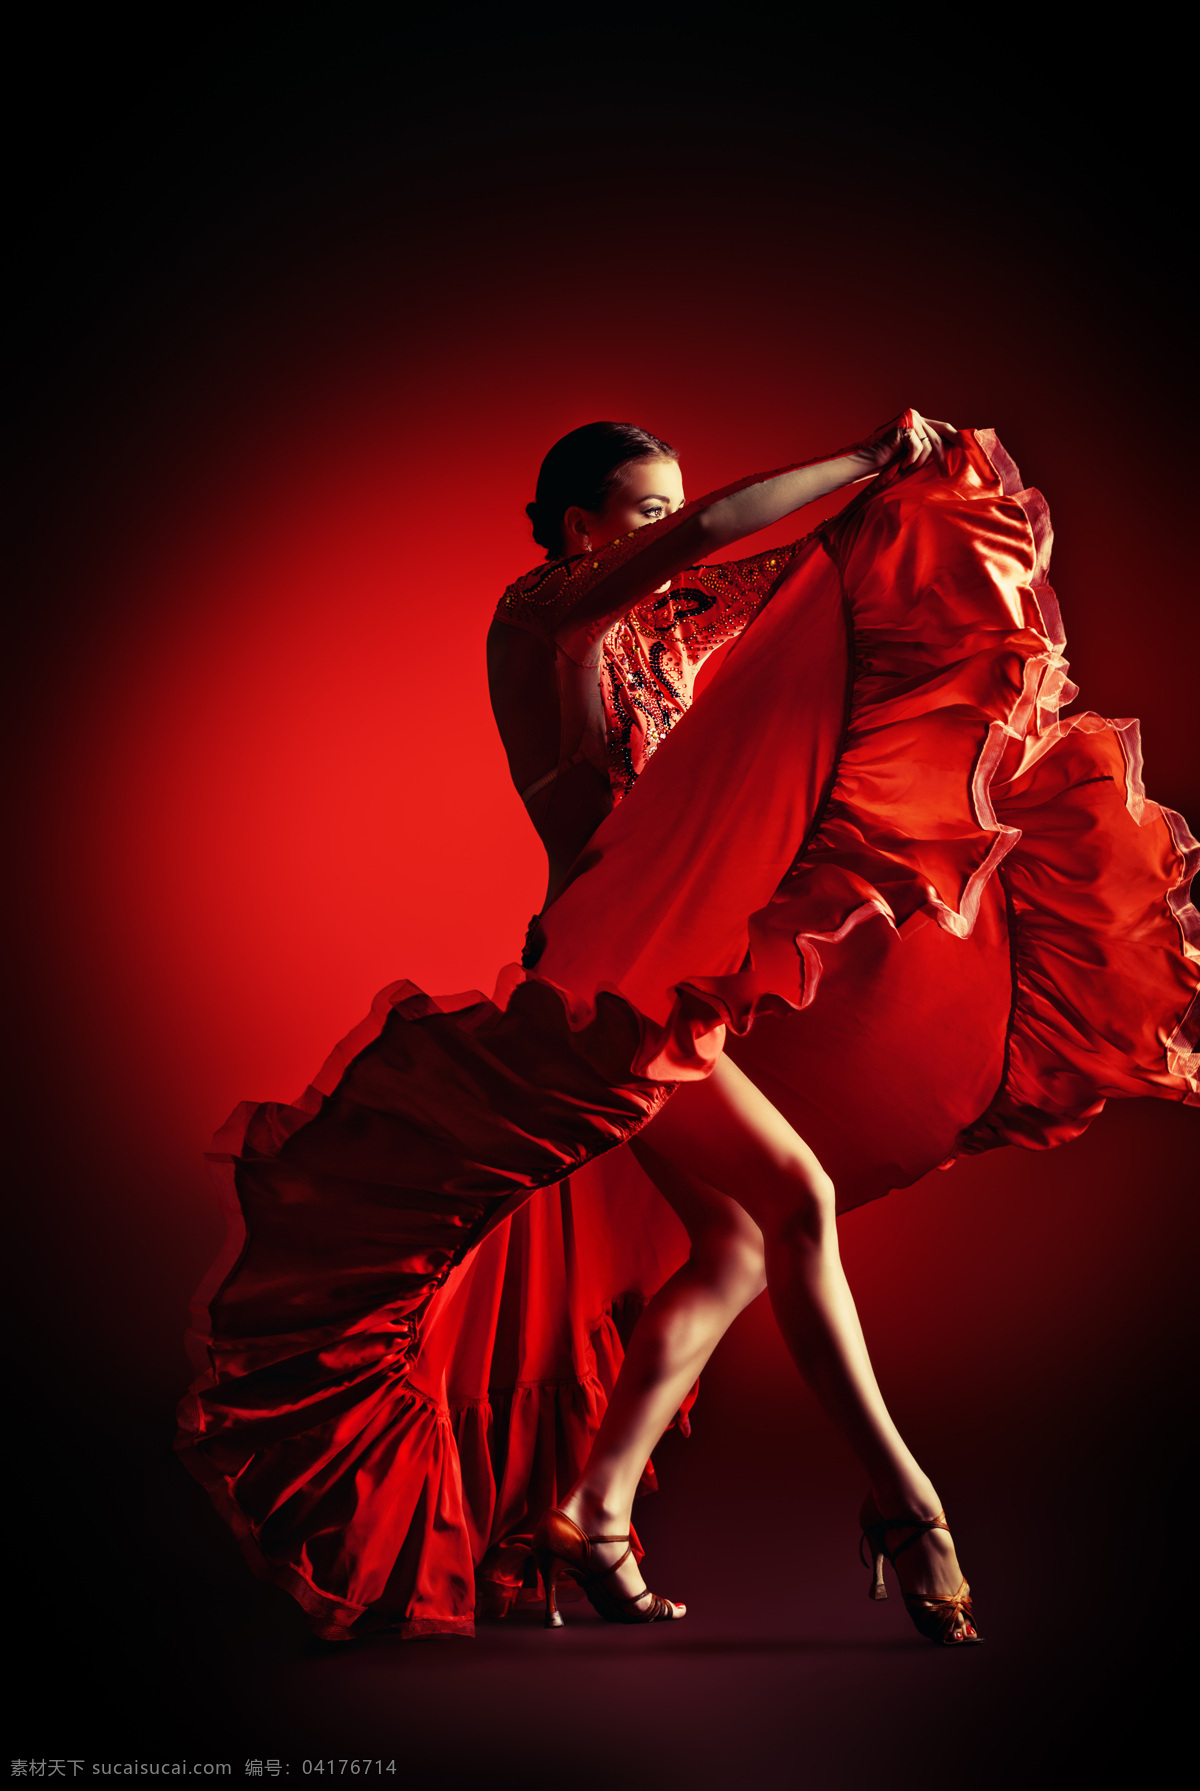 穿 红色 舞蹈 裙 跳舞 美女图片 拉丁舞 国标舞 美女 舞蹈家 红色背景 生活人物 人物图片